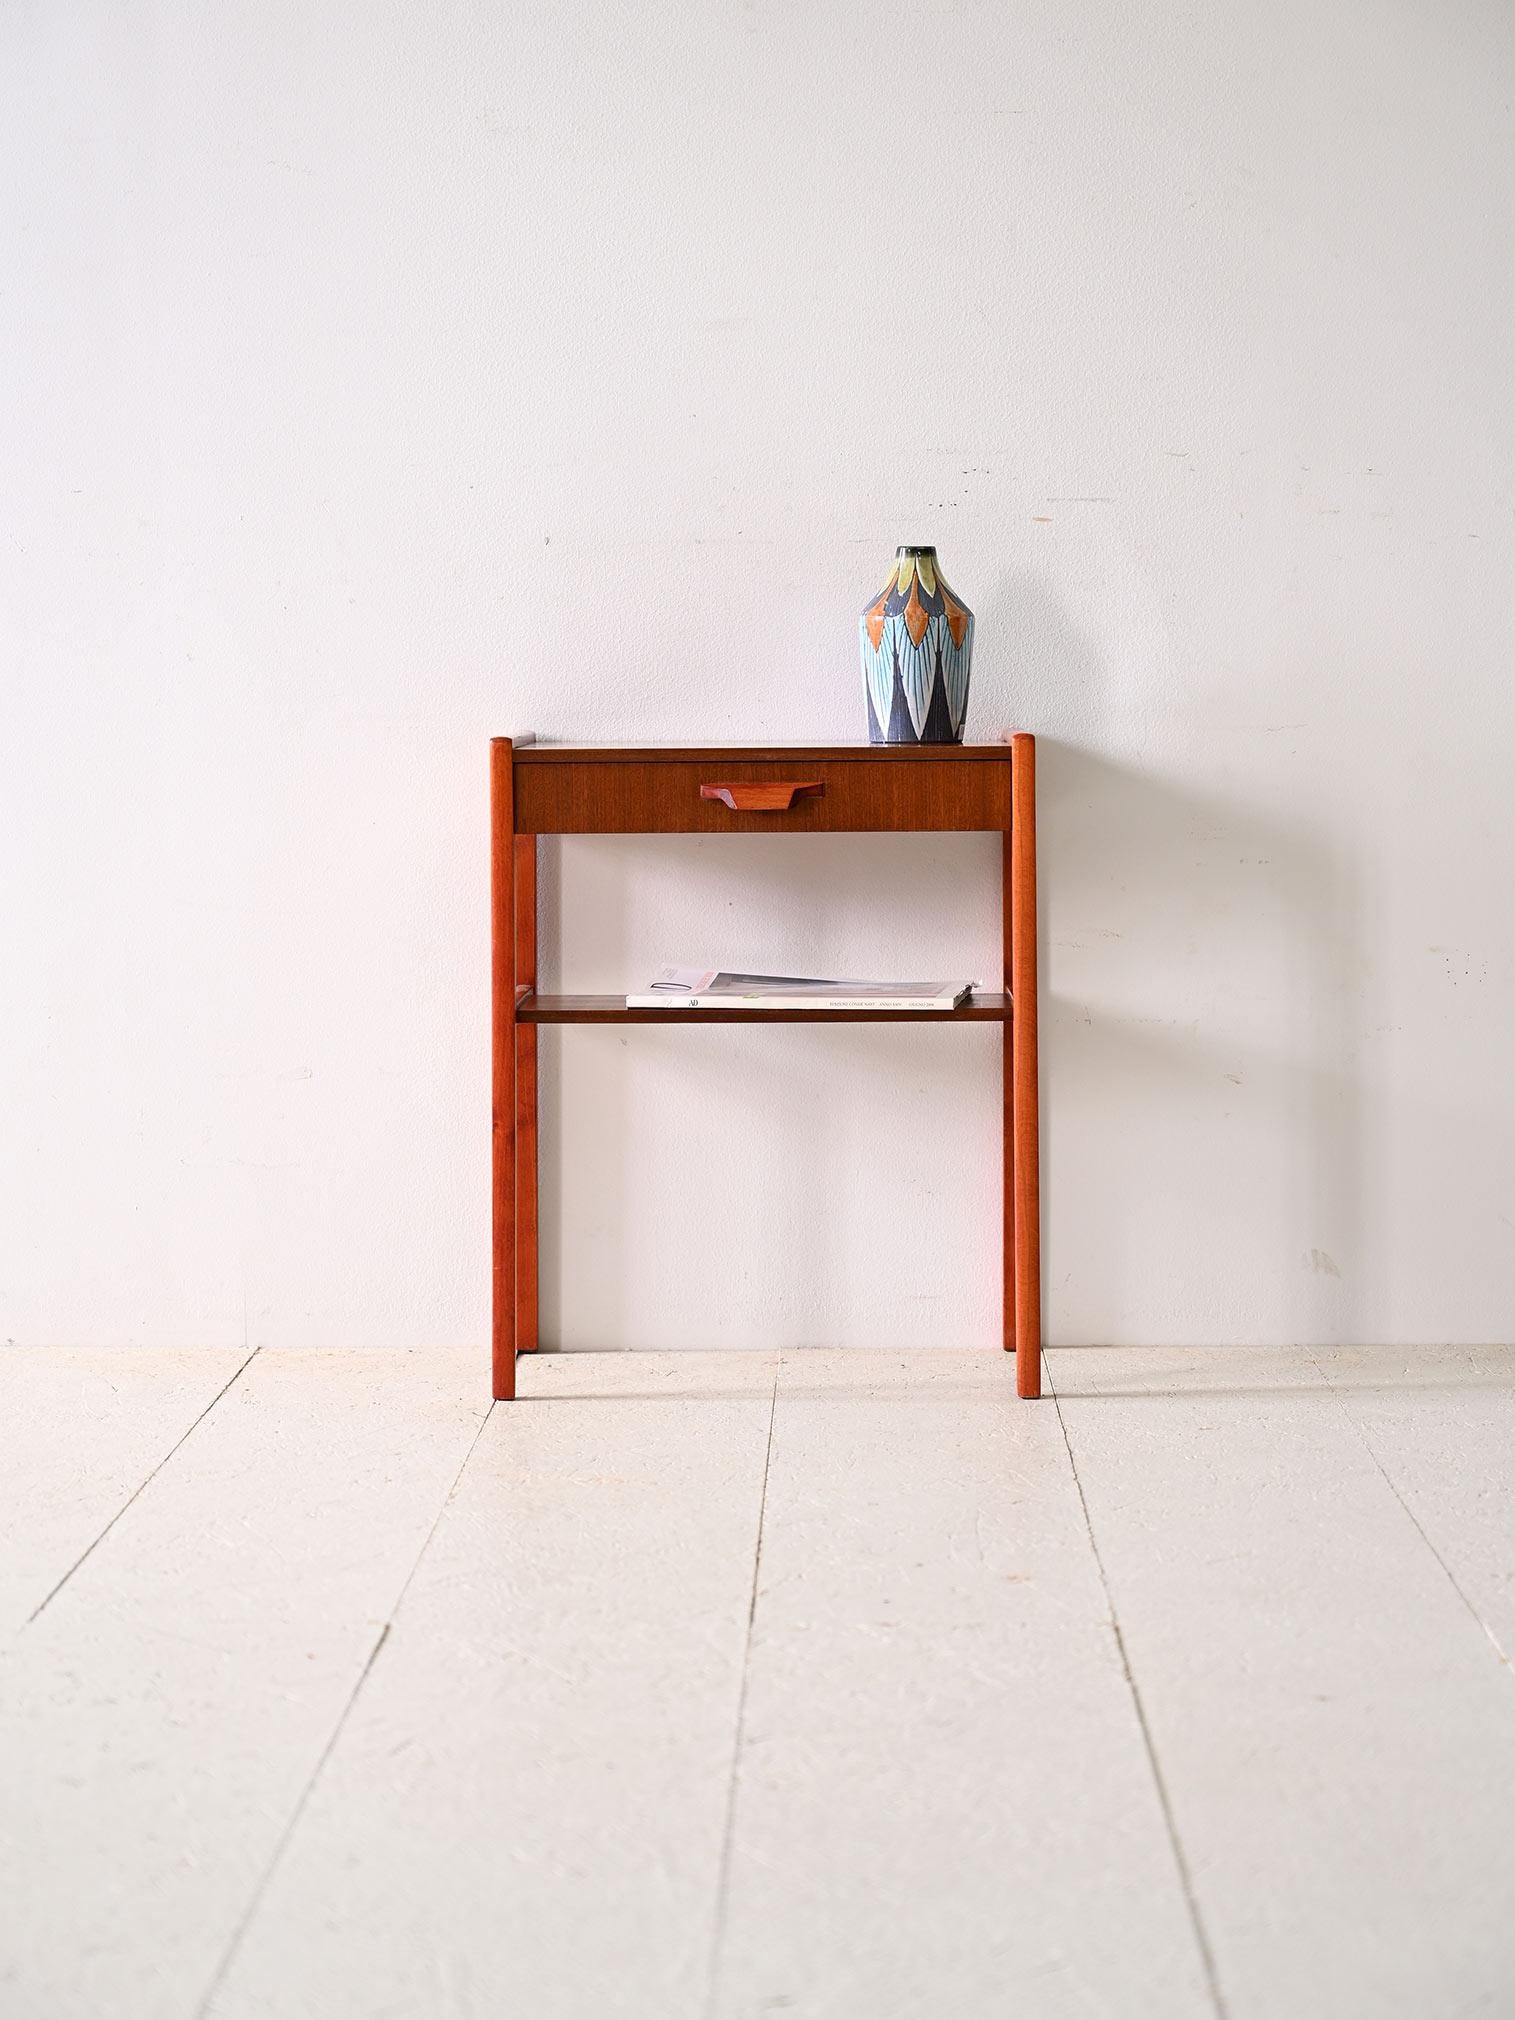 Nachttisch aus nordischem Mahagoni mit Schublade.

Nachttisch aus skandinavischem Mahagoni mit einfachen und klaren Linien, der sich durch einen minimalistischen Stil auszeichnet, der sich durch seine zeitlose Eleganz auszeichnet. 
Der geschnitzte